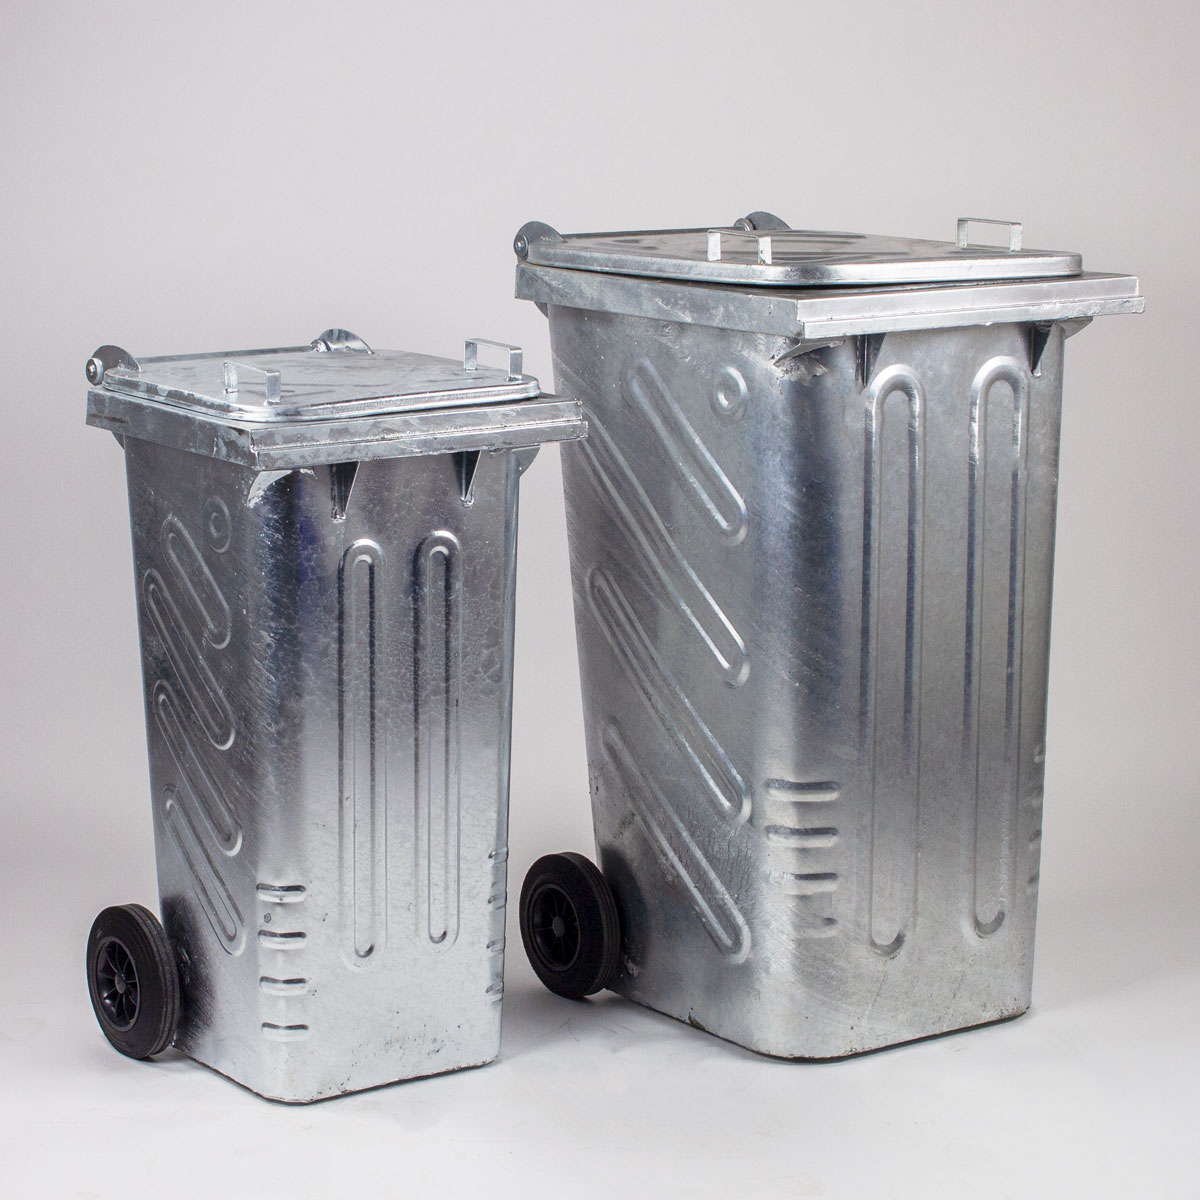 Container poubelle de 660 litres, poubelle recyclage, poubelle grise